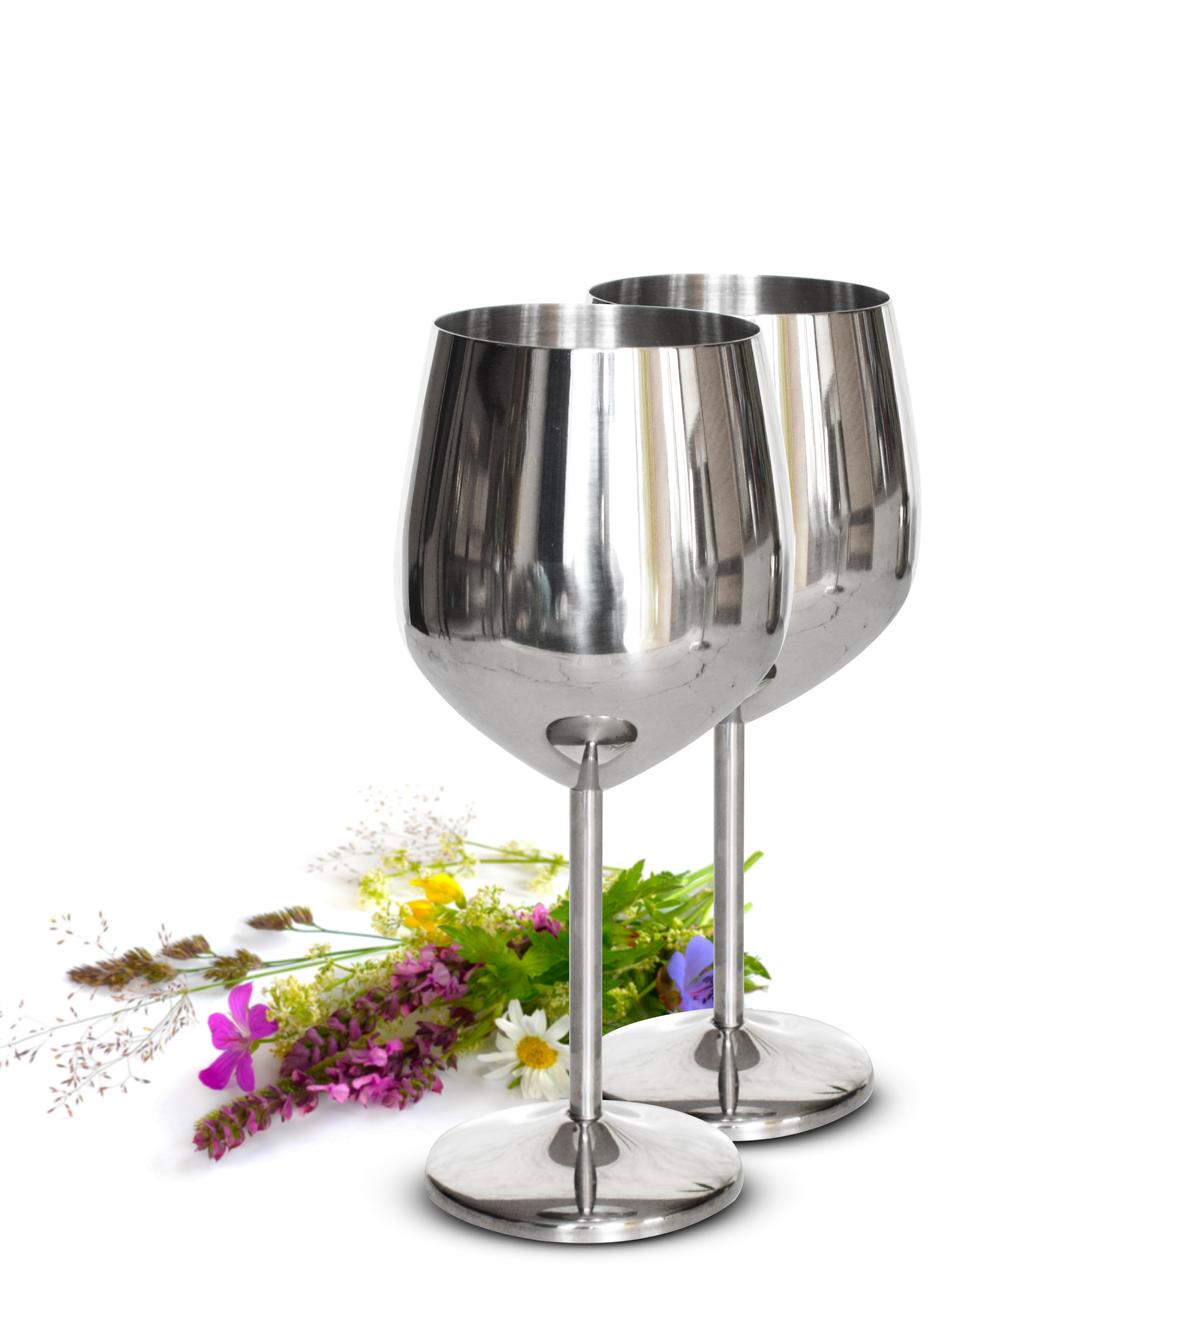 2 Weingläser 510ml Silber Edelstahl Weinkelch/Becher Rotweinglas unzerbrechlich